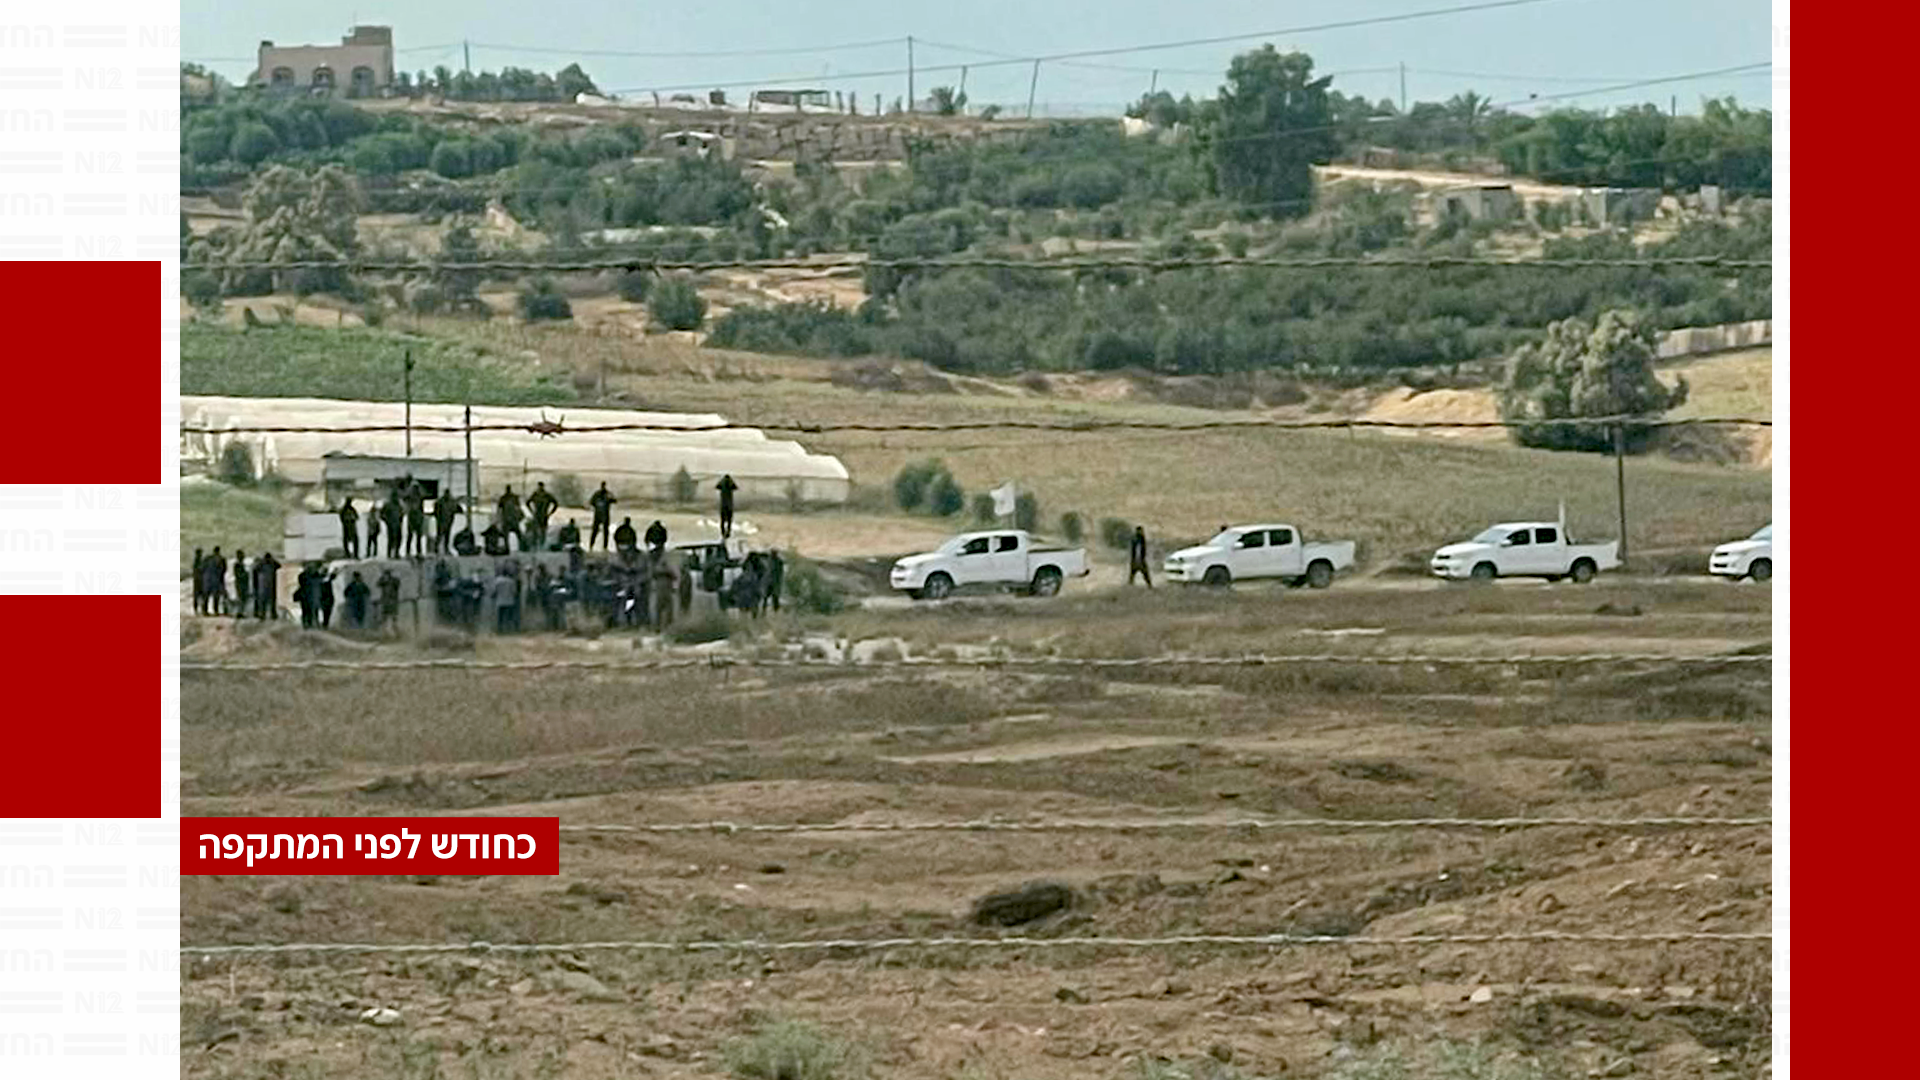 אימוני חמאס על הגבול, לפני מתקפת ה-7 באוקטובר (צילום: לפי סעיף 27 א')